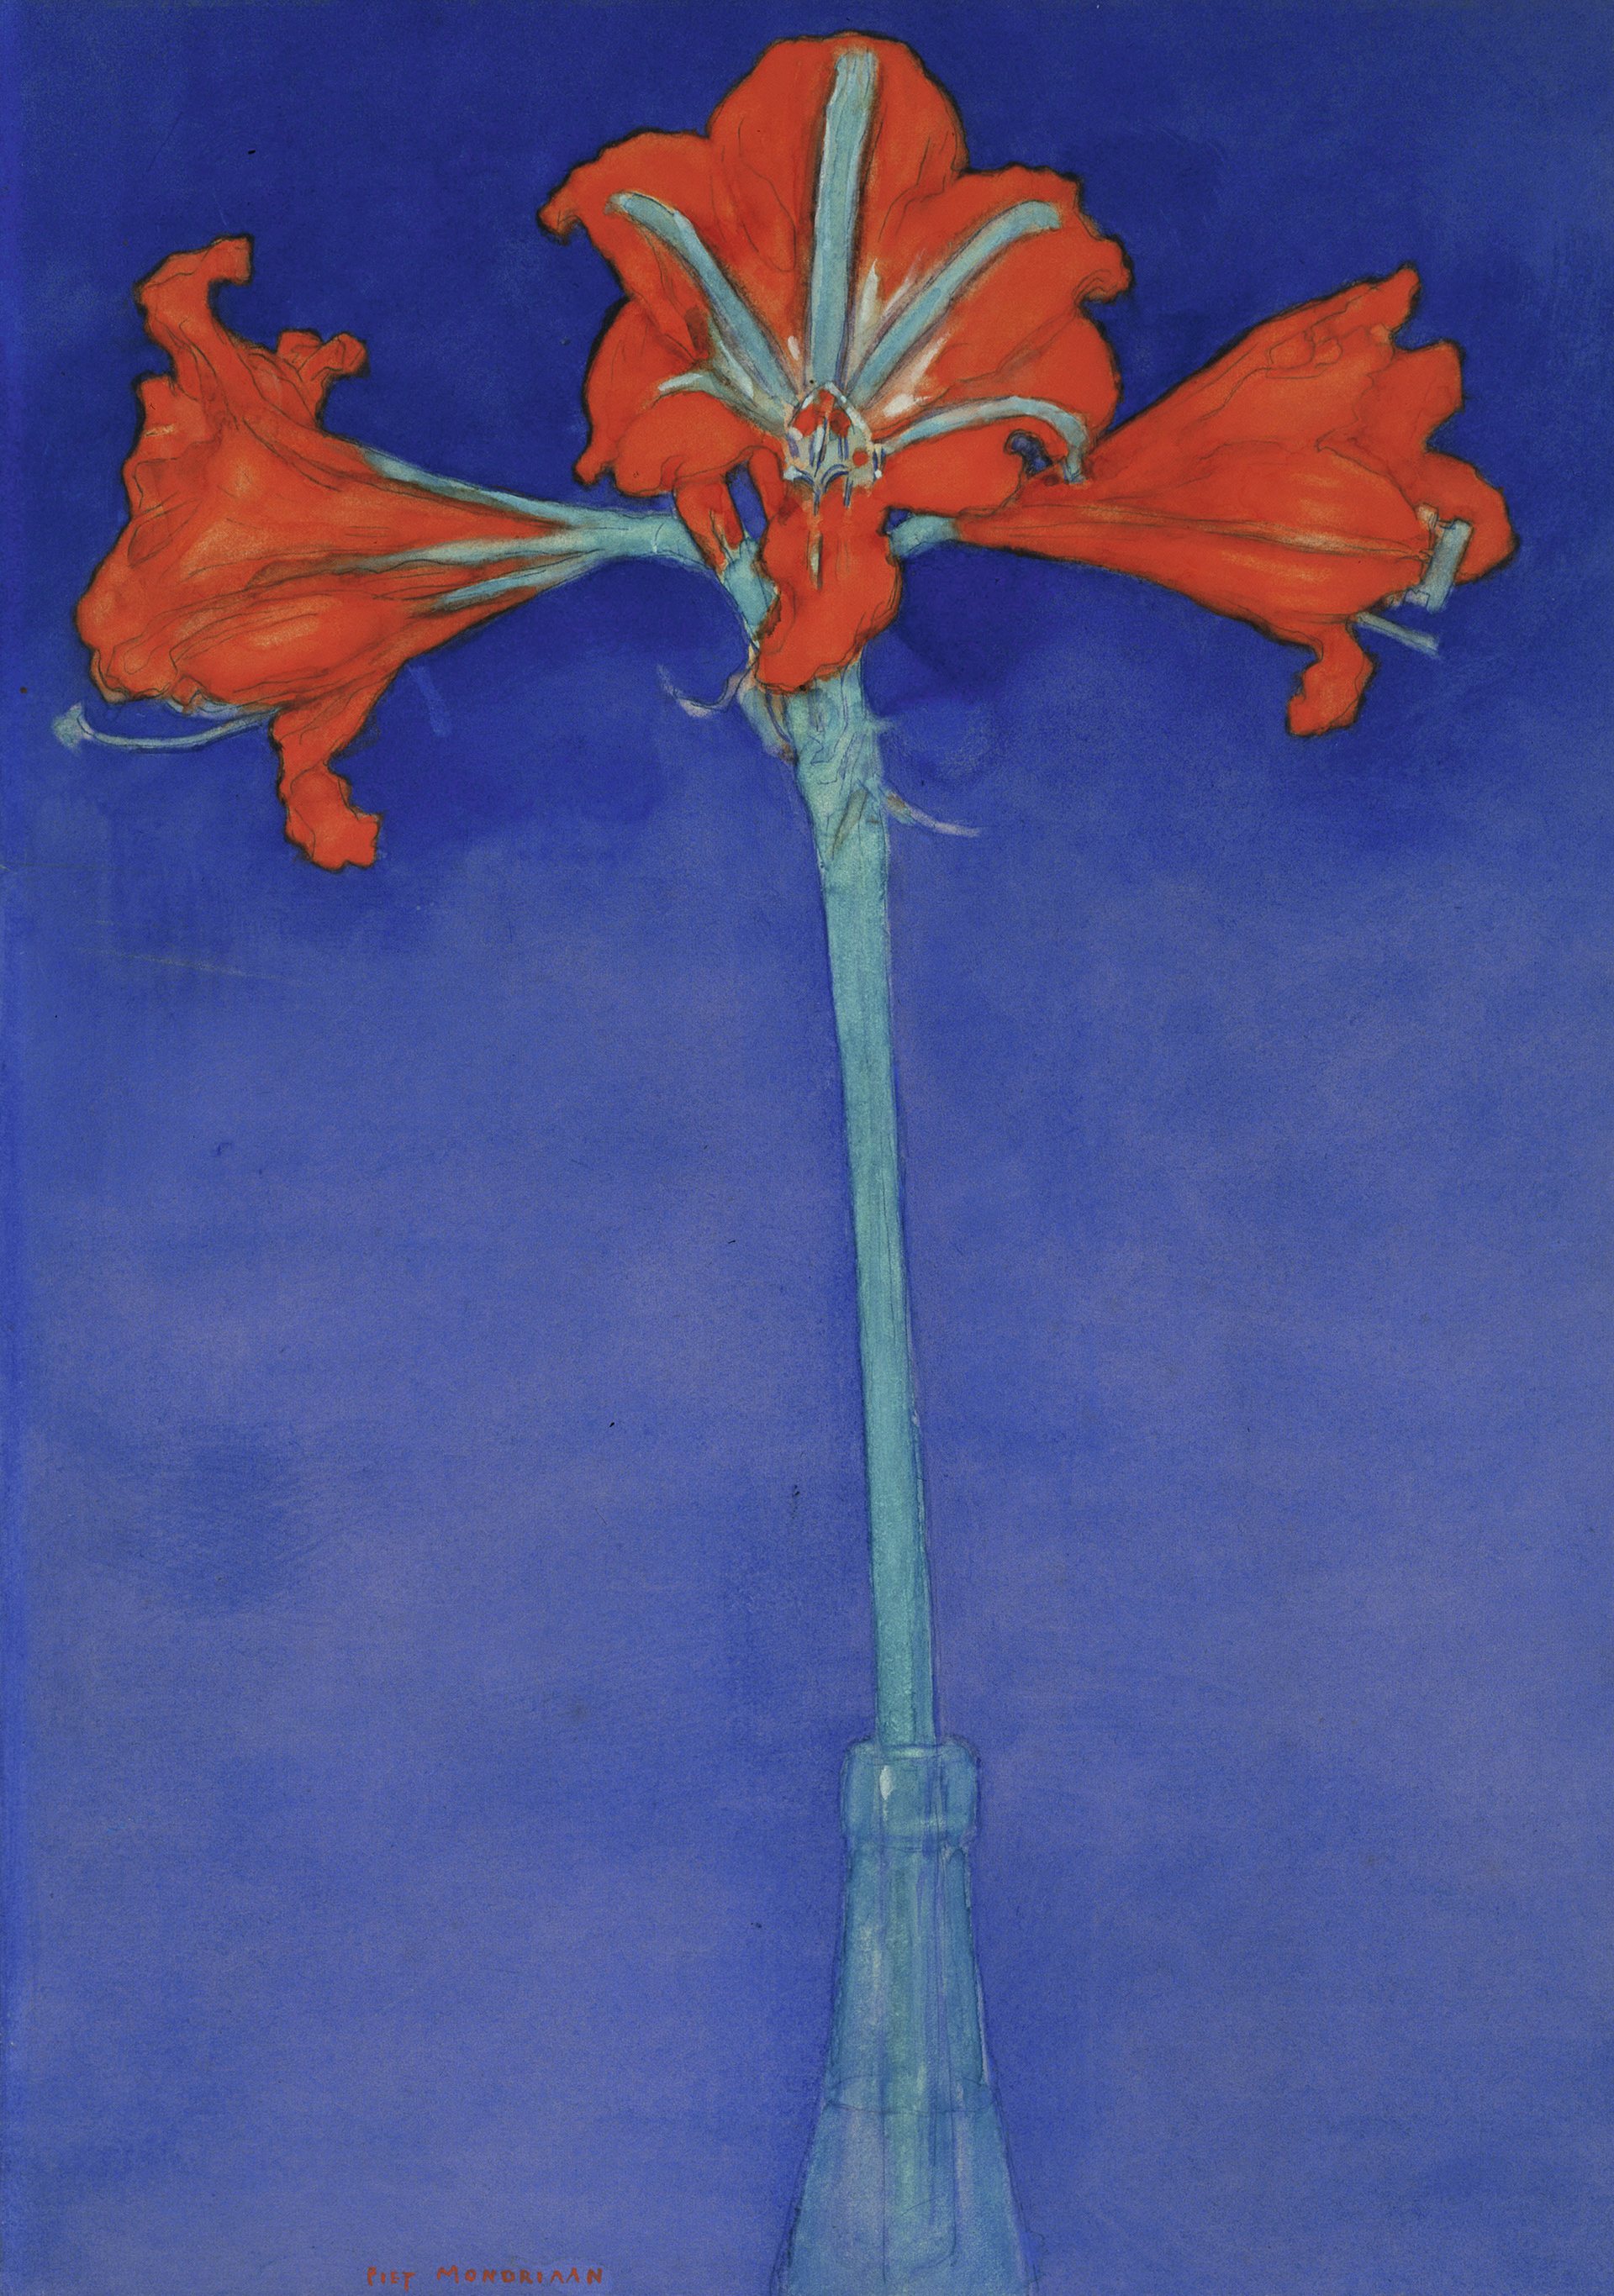 Amaryllis rouge sur fond bleu by Piet Mondrian - 1907 Museum of Modern Art